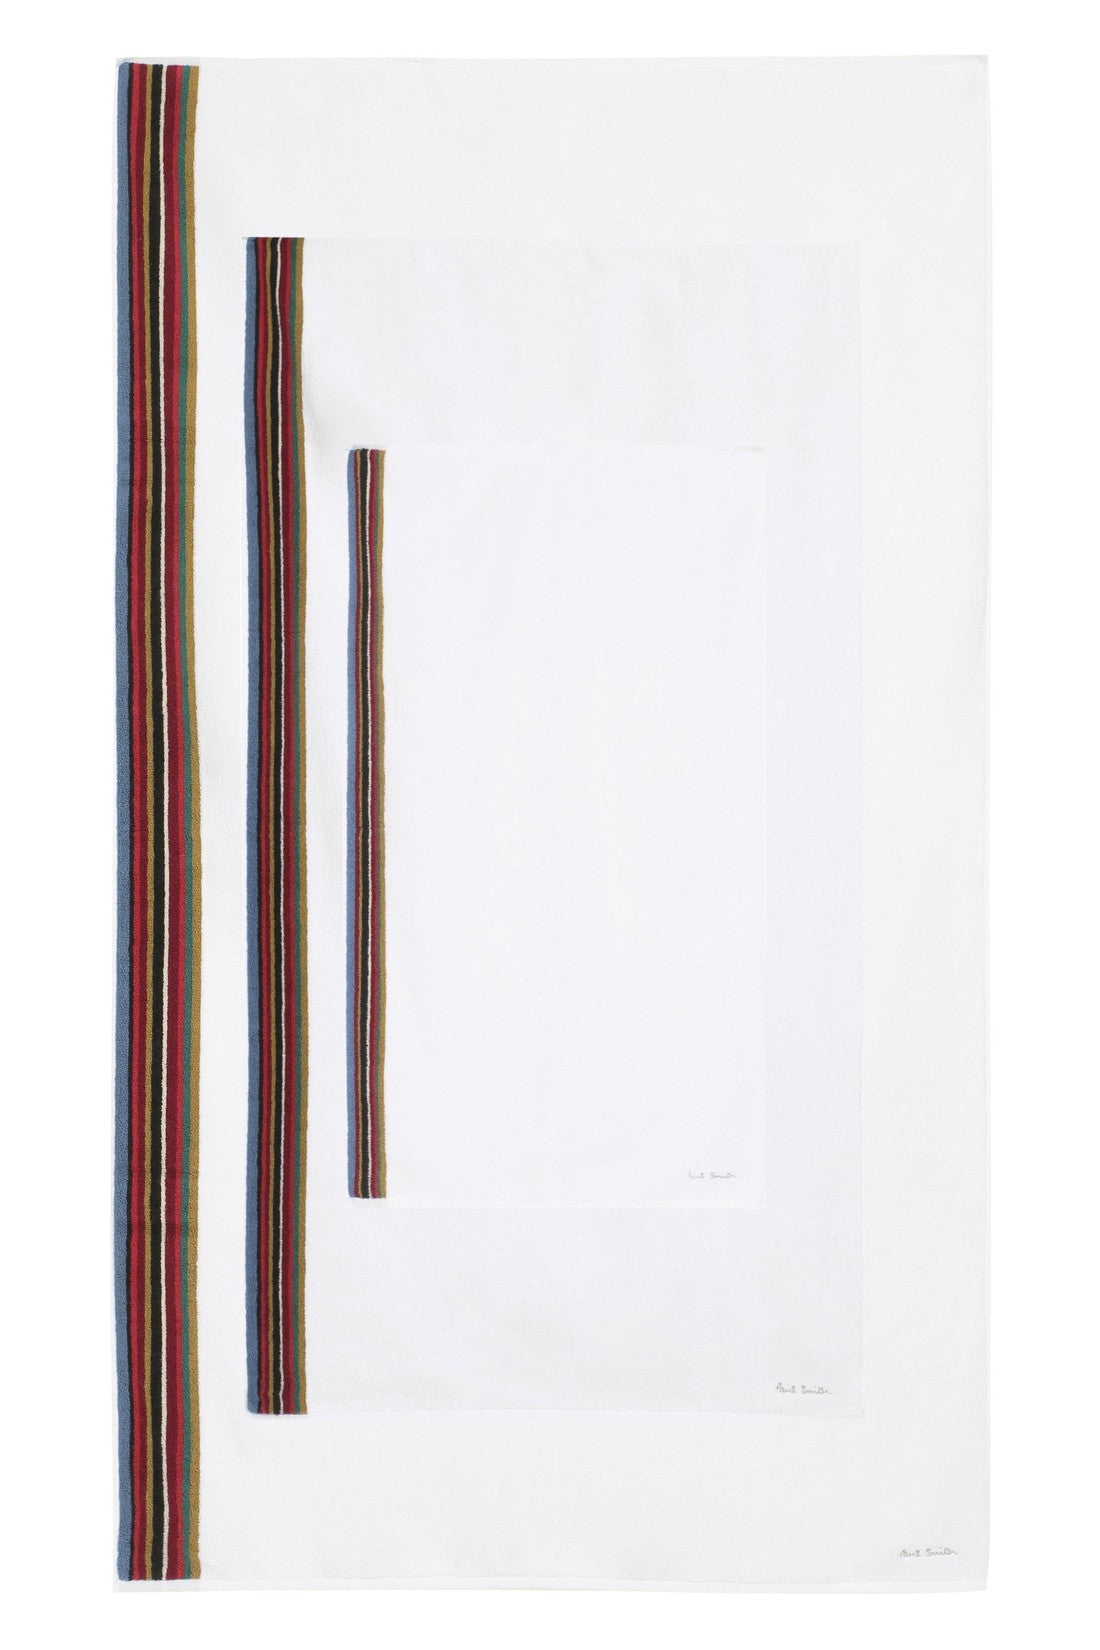 Paul Smith-OUTLET-SALE-Towel sets-ARCHIVIST